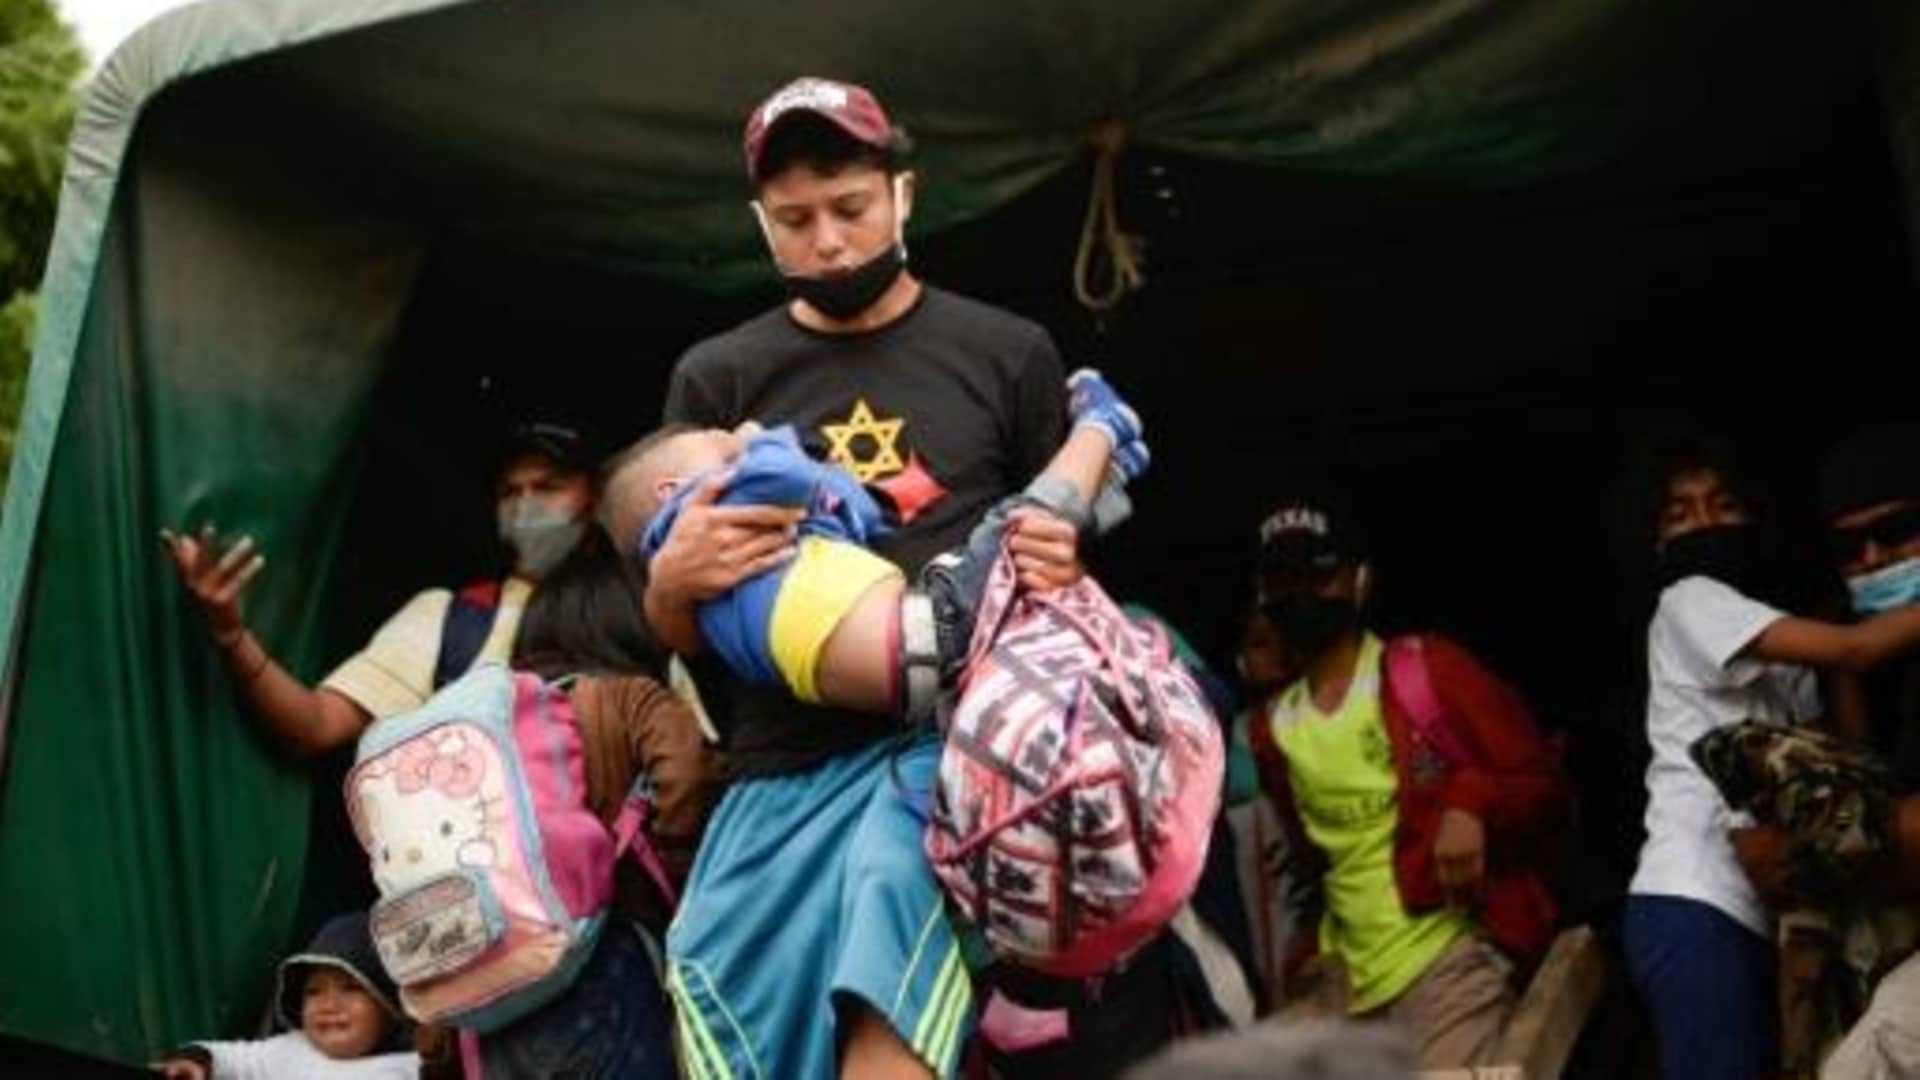 Obispos de Centroamérica piden respeto a los derechos de los migrantes hondureños en caravana